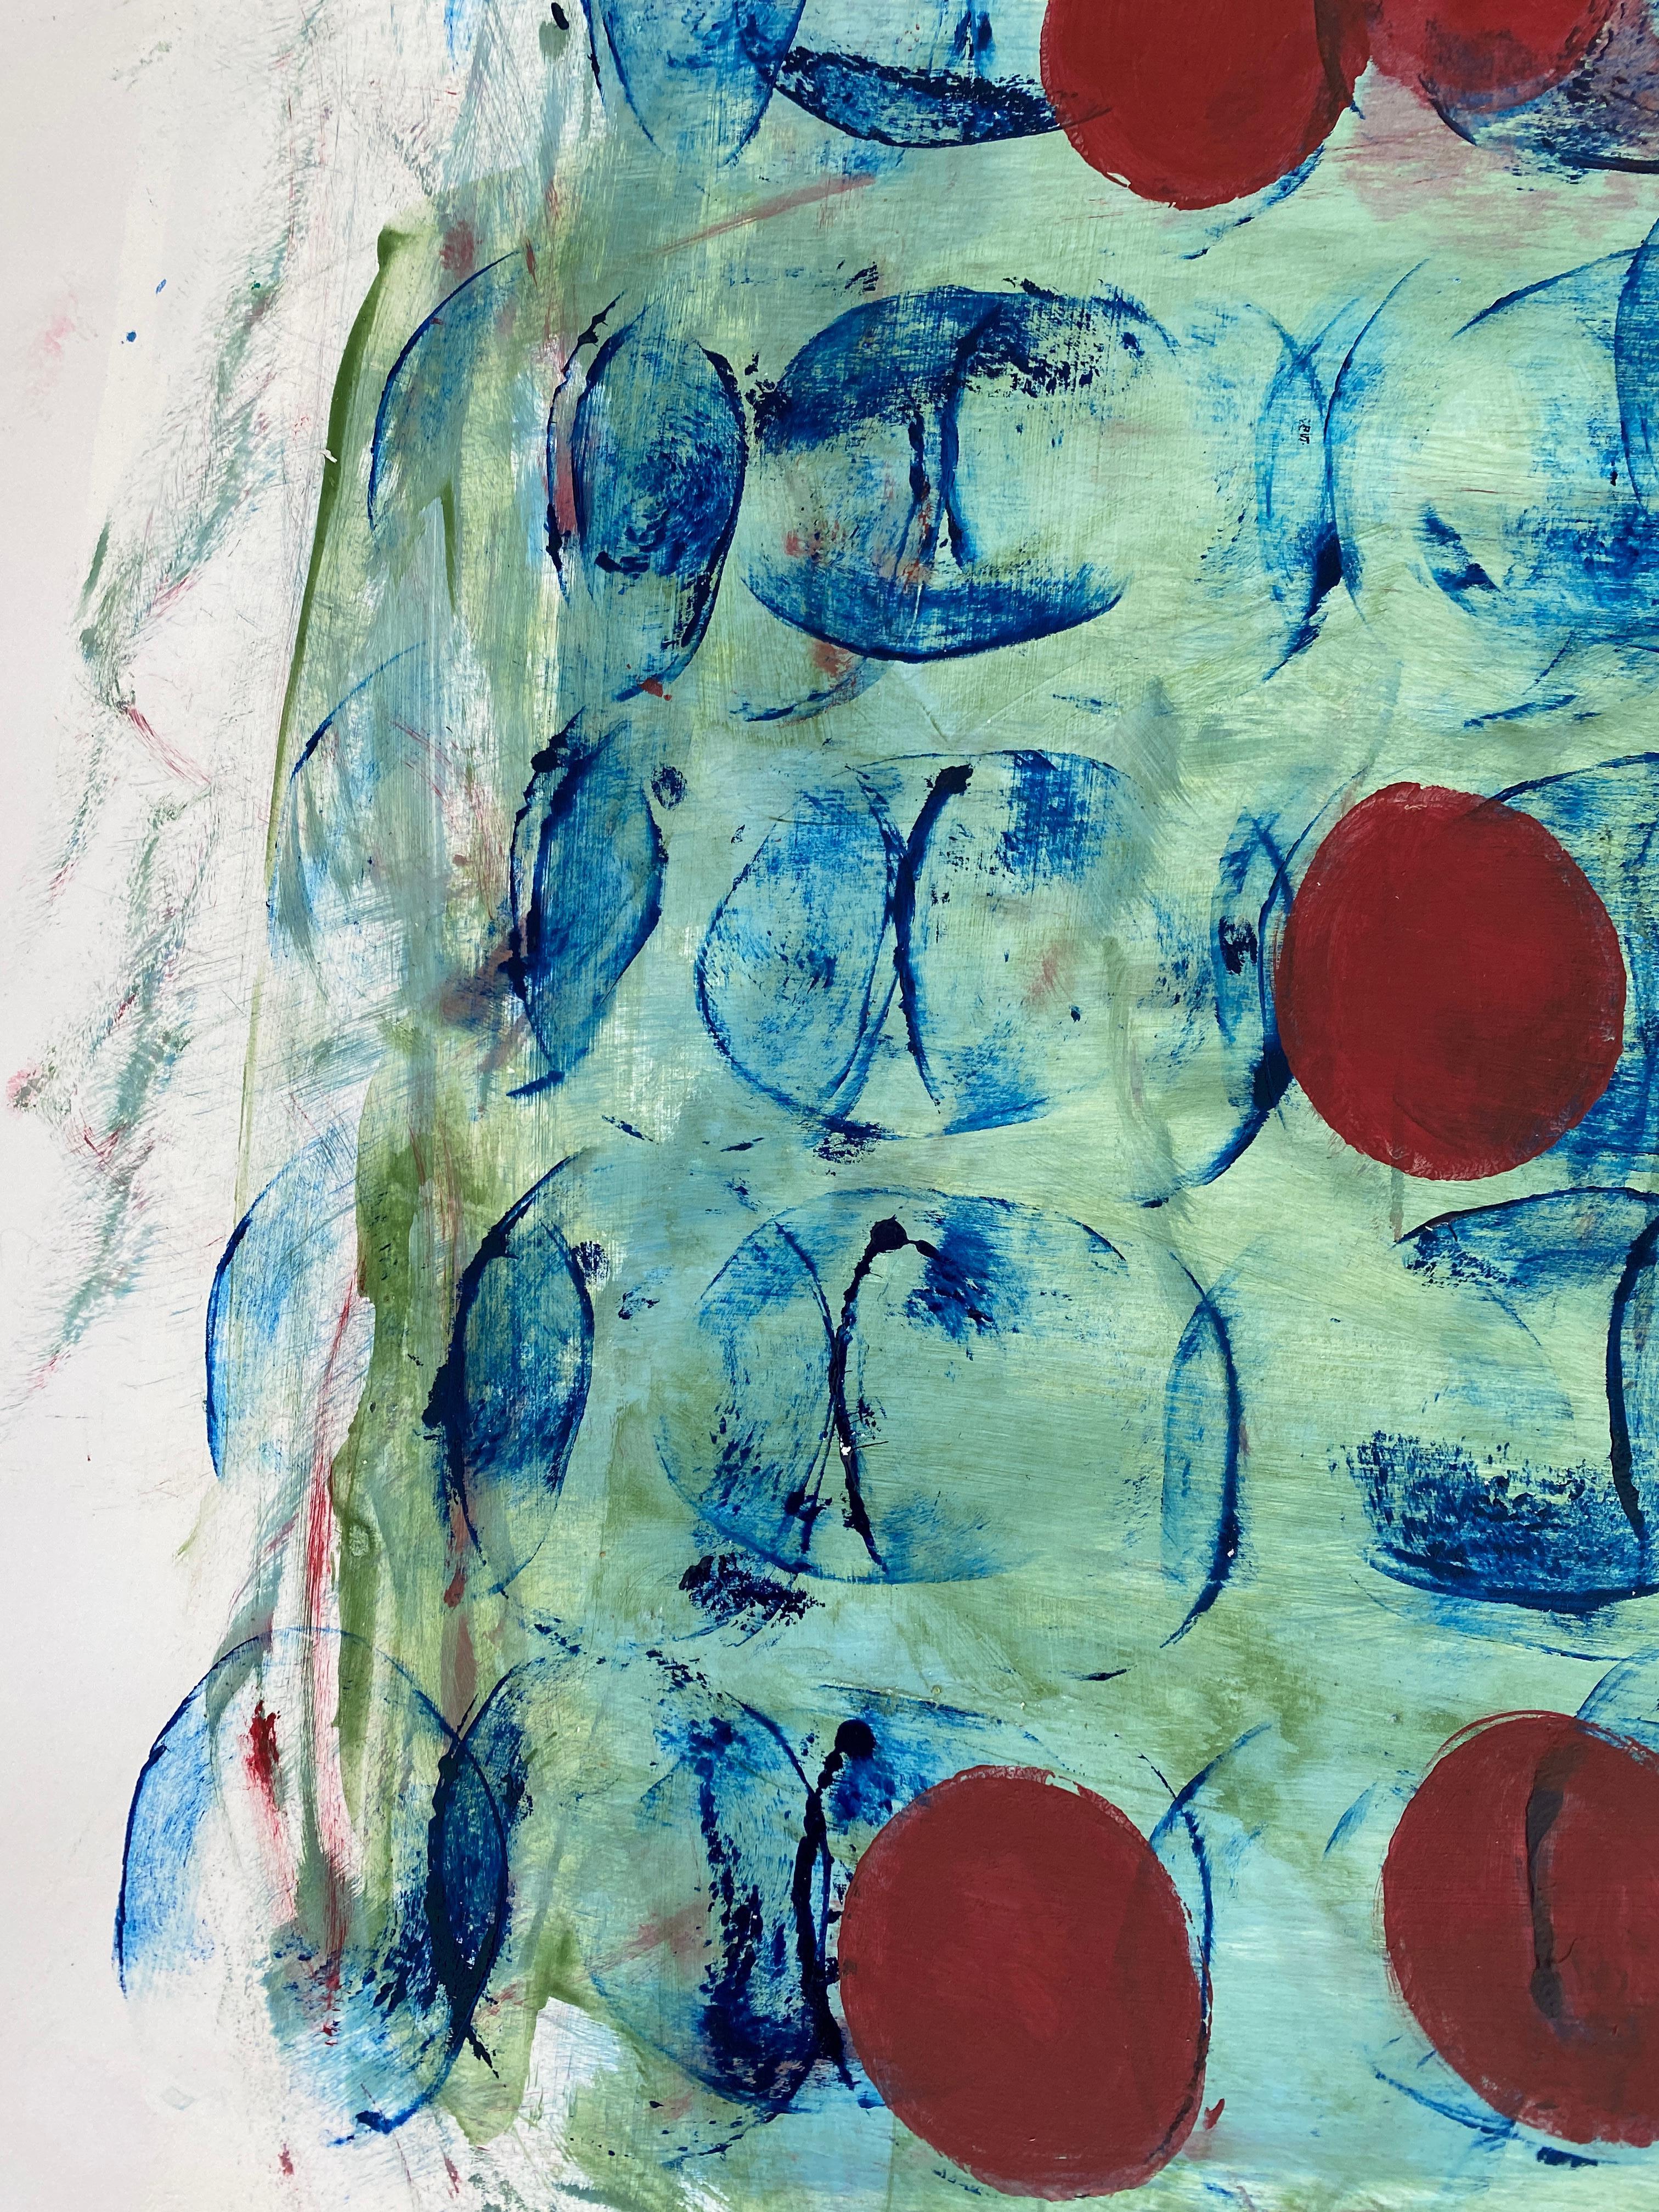 Sous l'eau : cercles rouges contre fond bleu  - Painting de Lisa Lightman